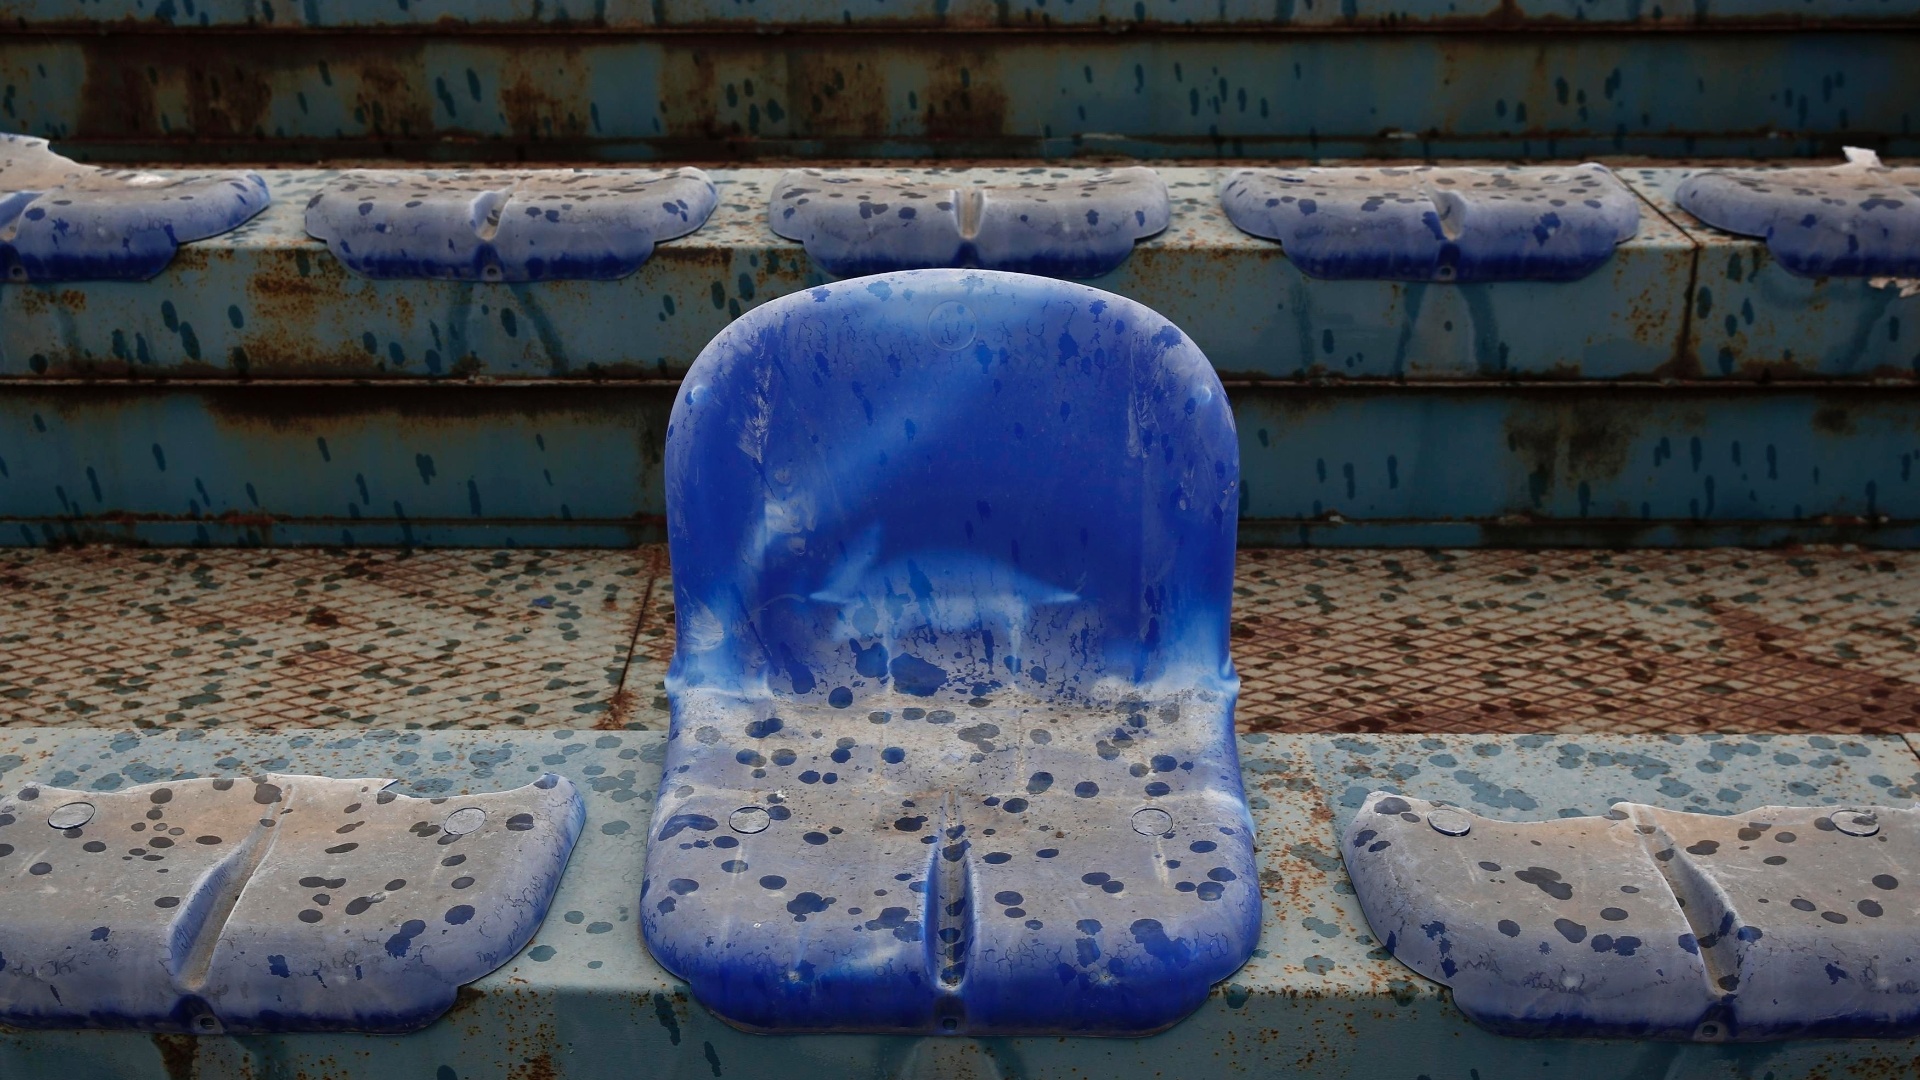 07.jul.2014 - Foto mostra cadeira quebrada no abandonado estádio que recebeu jogos de beisebol na Olimpíada de Atenas em 2004